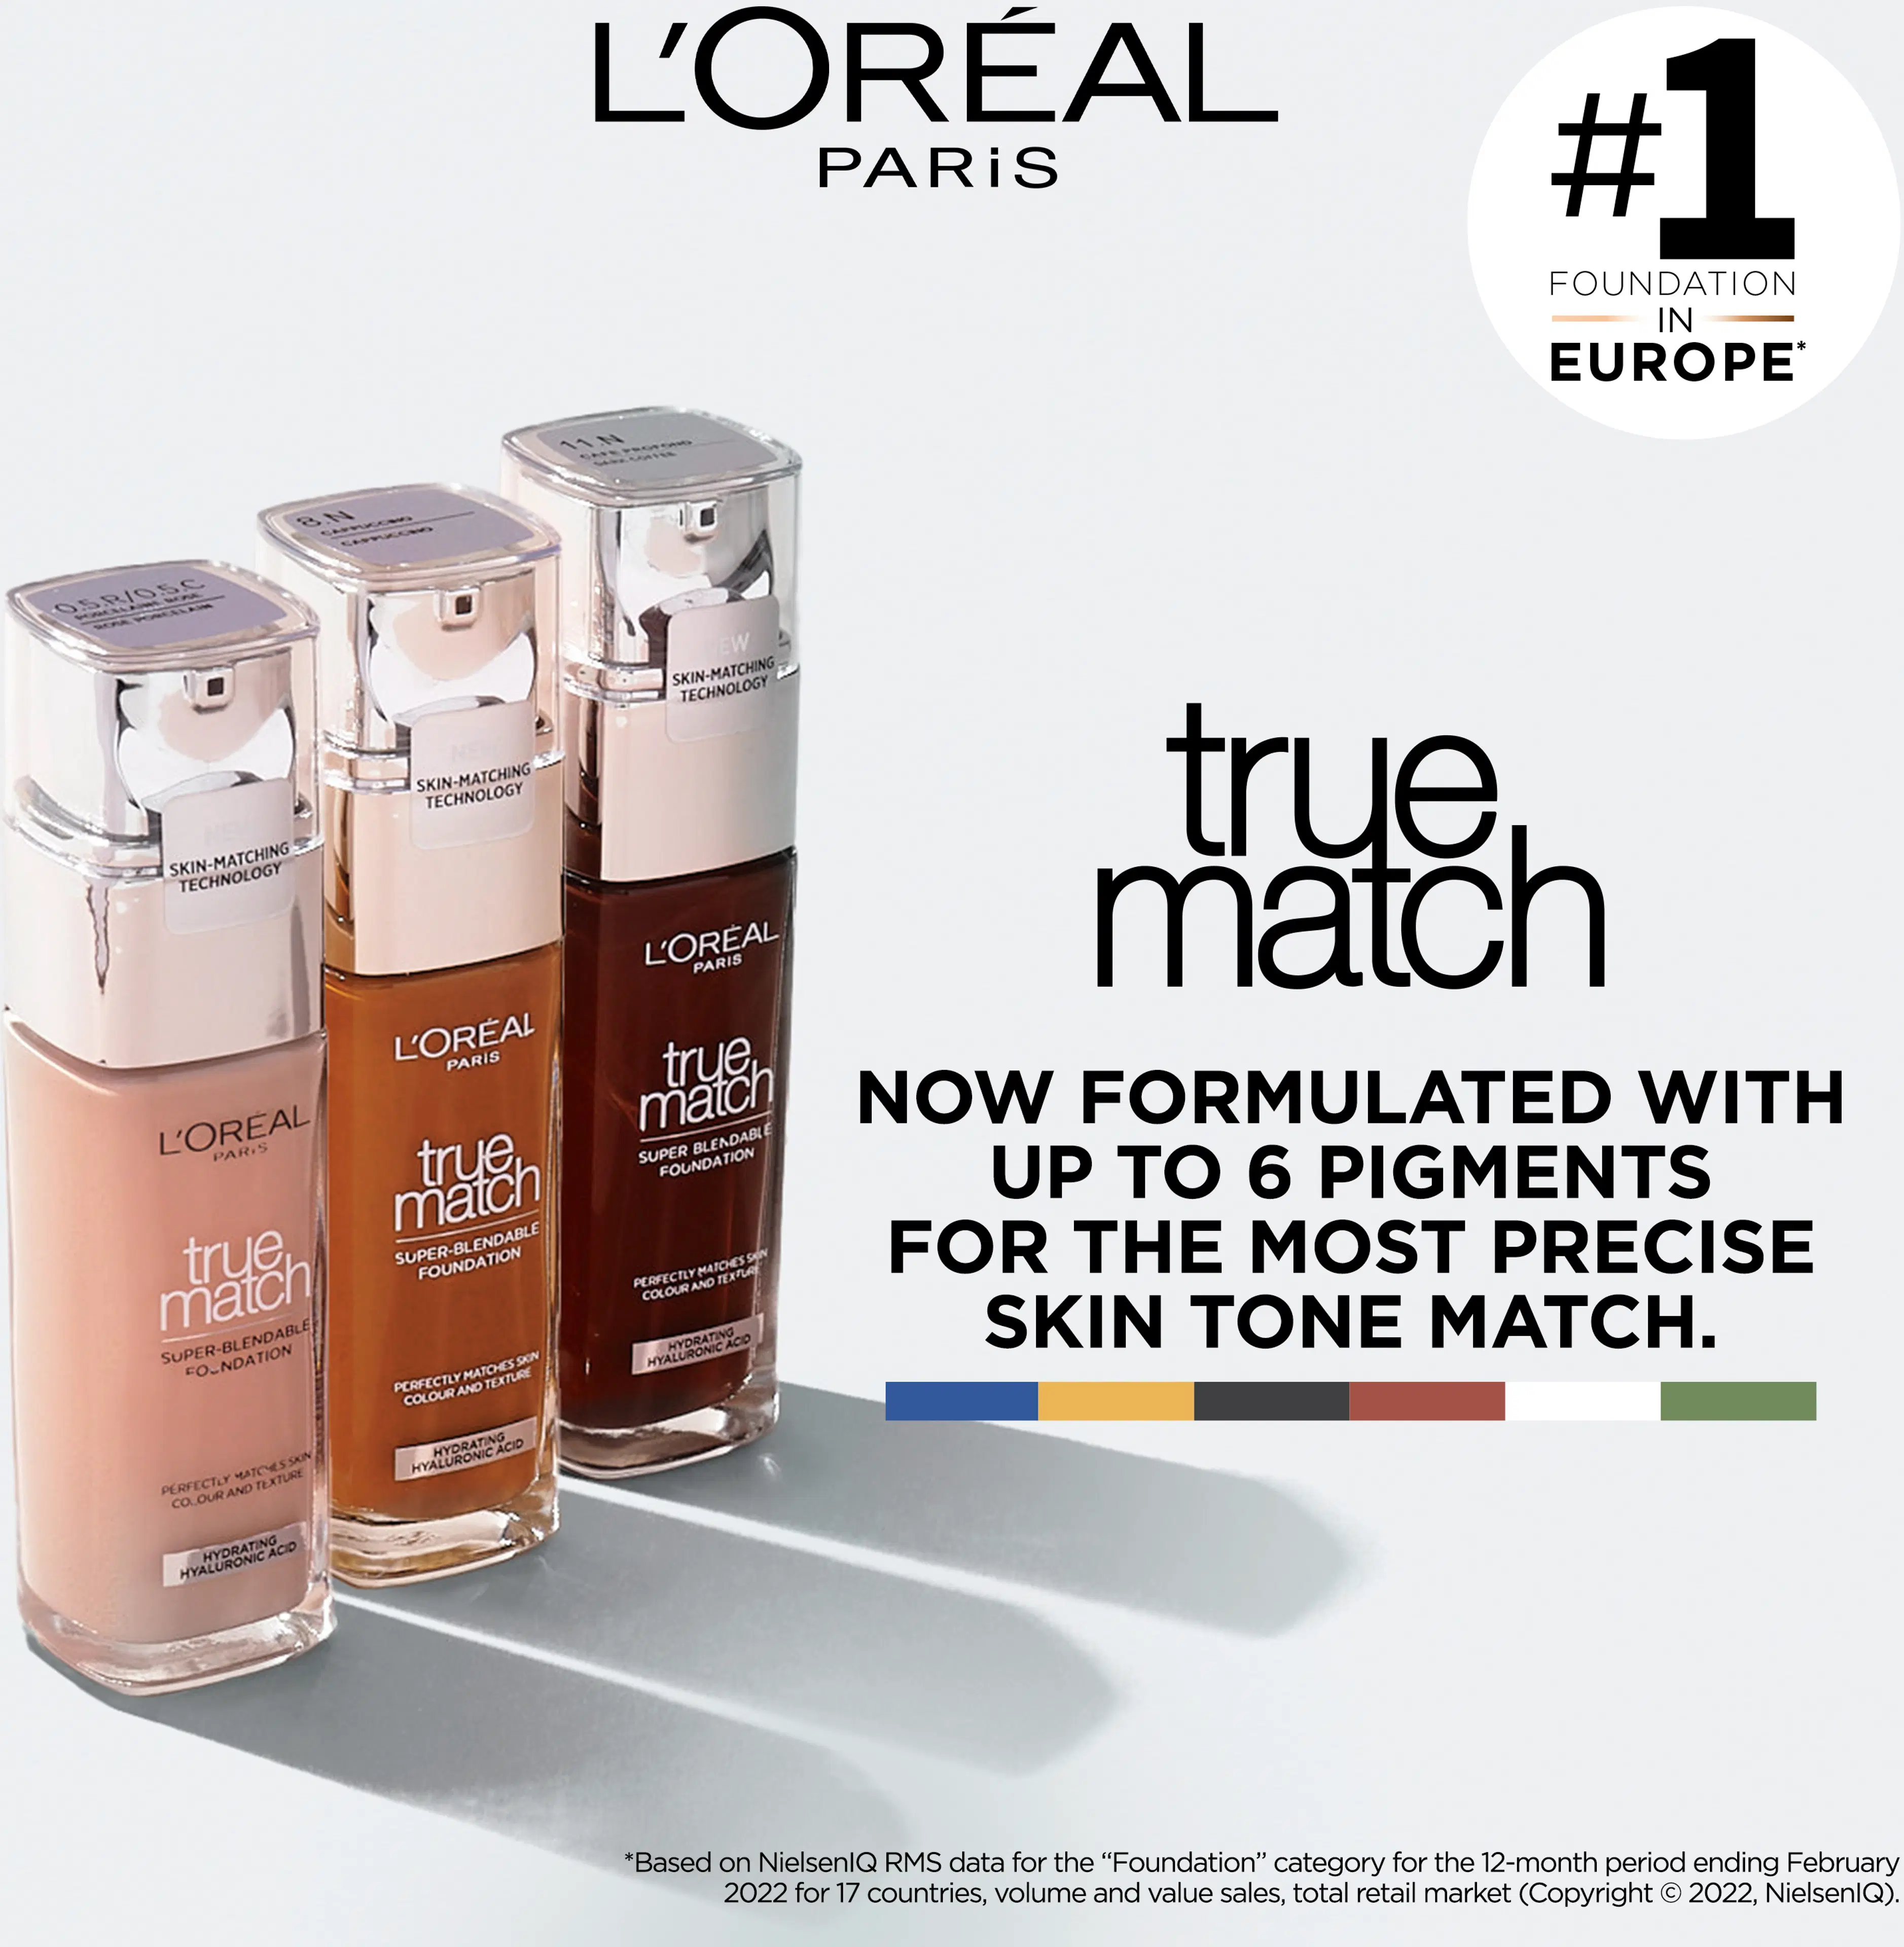 L'Oréal Paris True Match meikkivoide 5.C Sable Rose 30ml